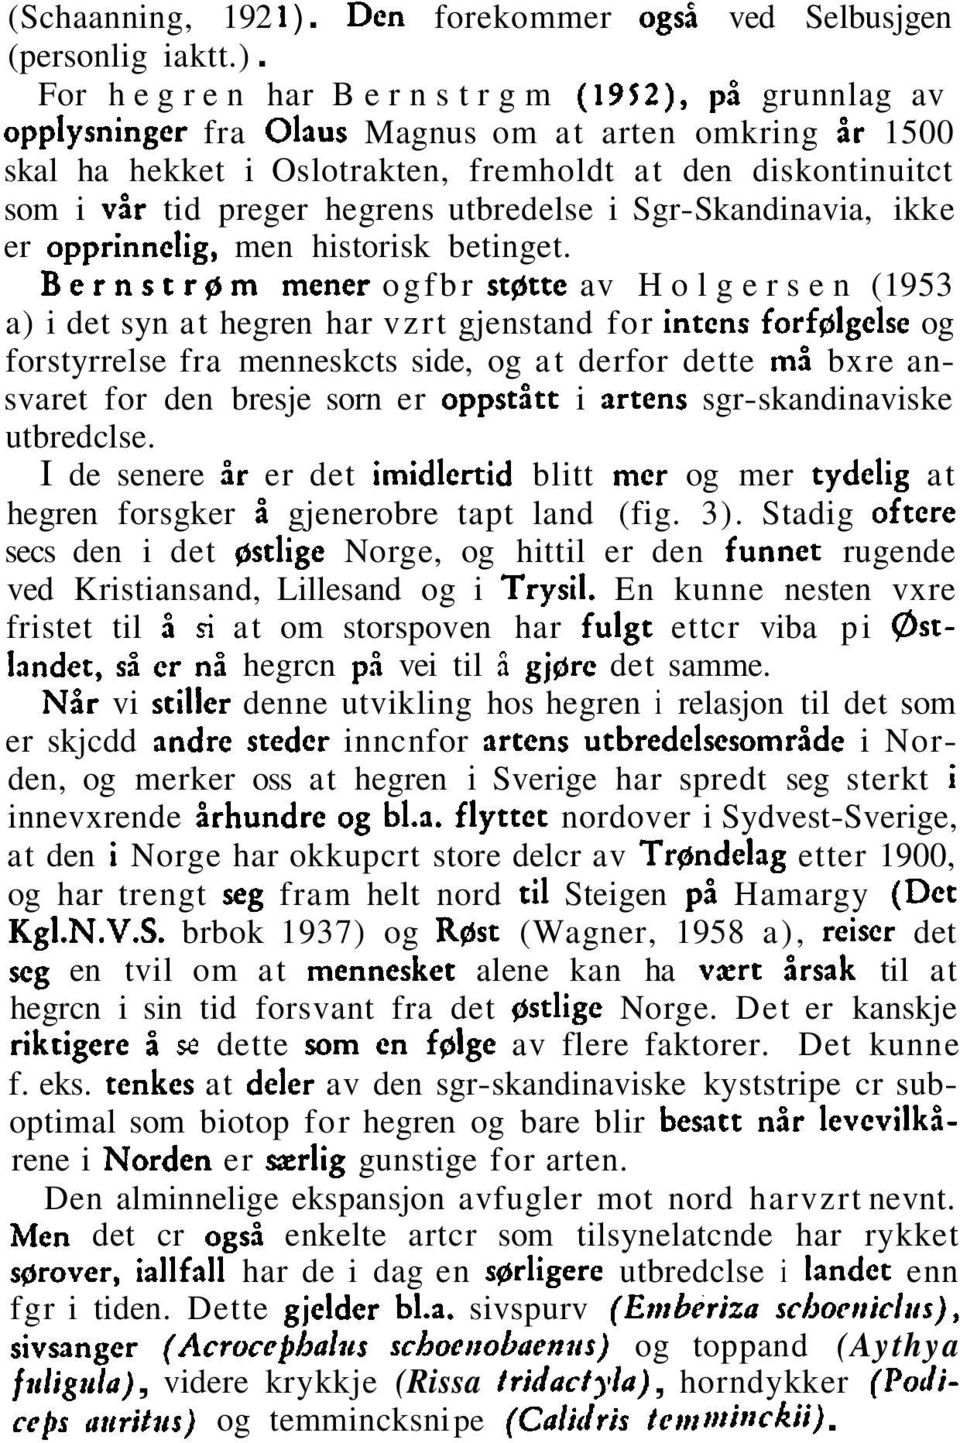 For hegren har Bernstrgm (1952), pi grunnlag av opplysningcr fra Olaus Magnus om at arten omkring br 1500 skal ha hekket i Oslotrakten, fremholdt at den diskontinuitct som i vir tid preger hegrens